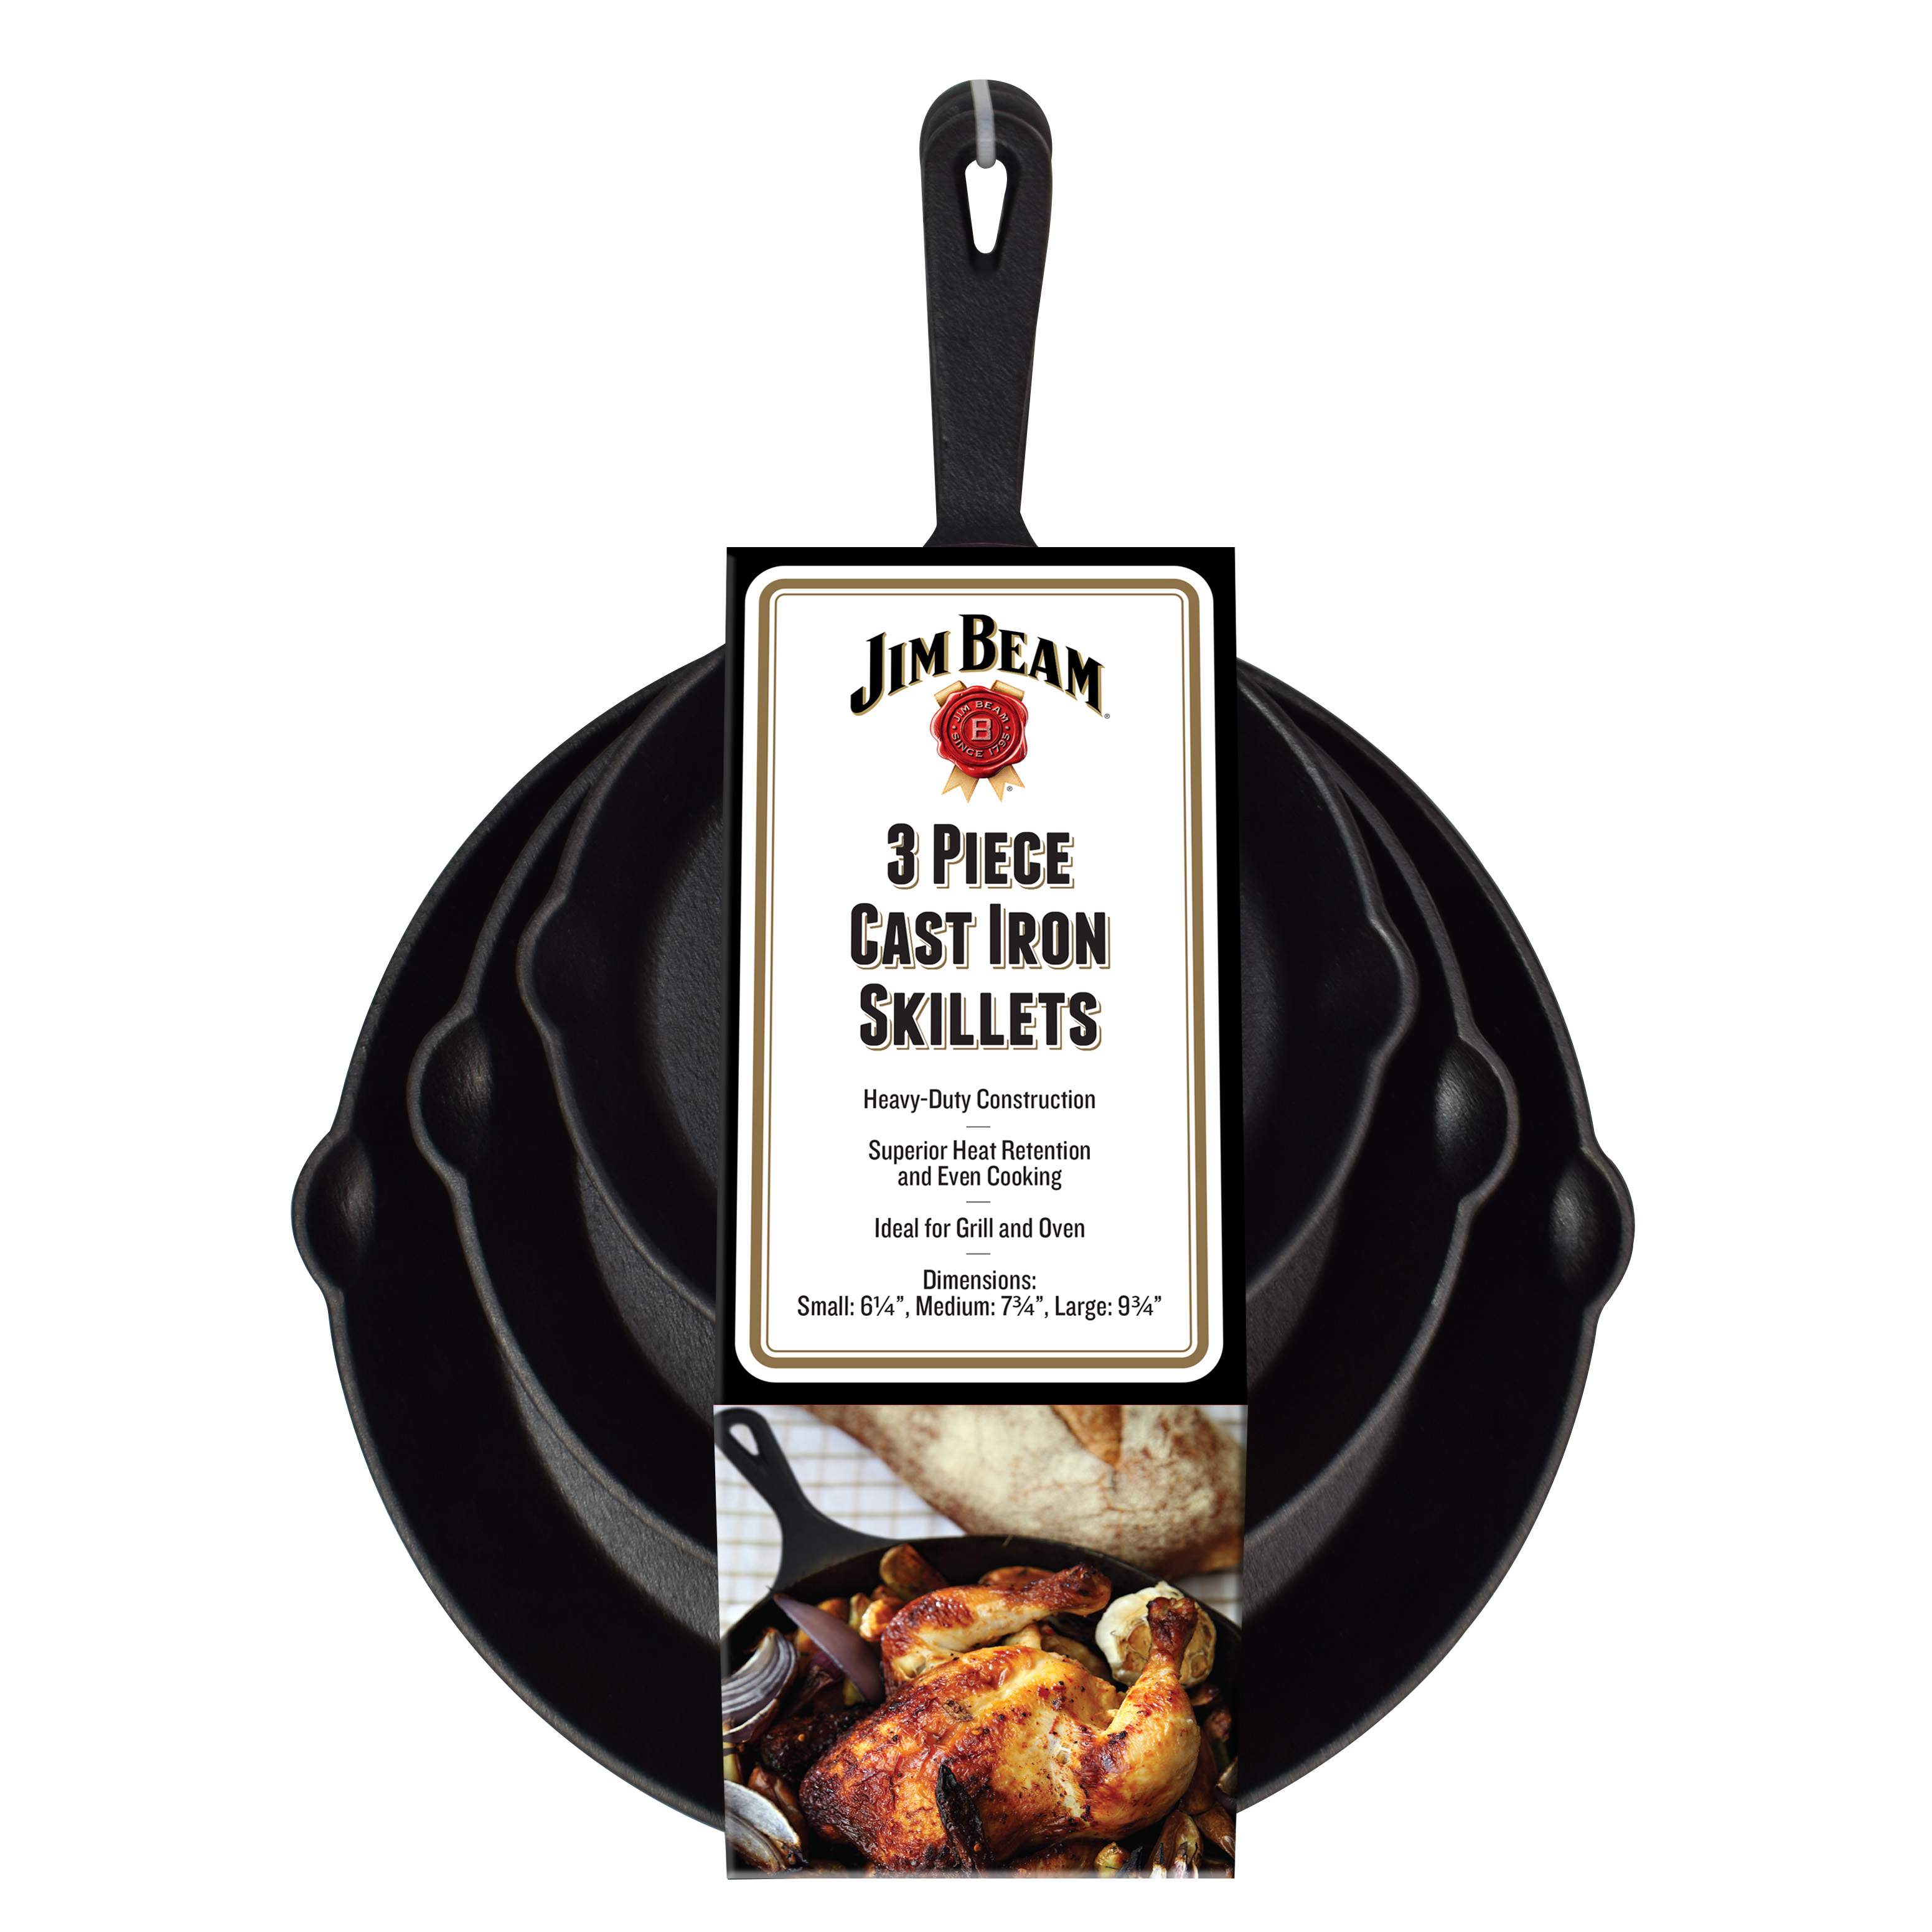 Jim Beam Bratpfanne aus Gusseisen mit Ausgießer, 3er Set BBQ Grillpfannen, für Grill und Ofen, induktionsfähig, 16cm, 20cm, 25cm, JB0195